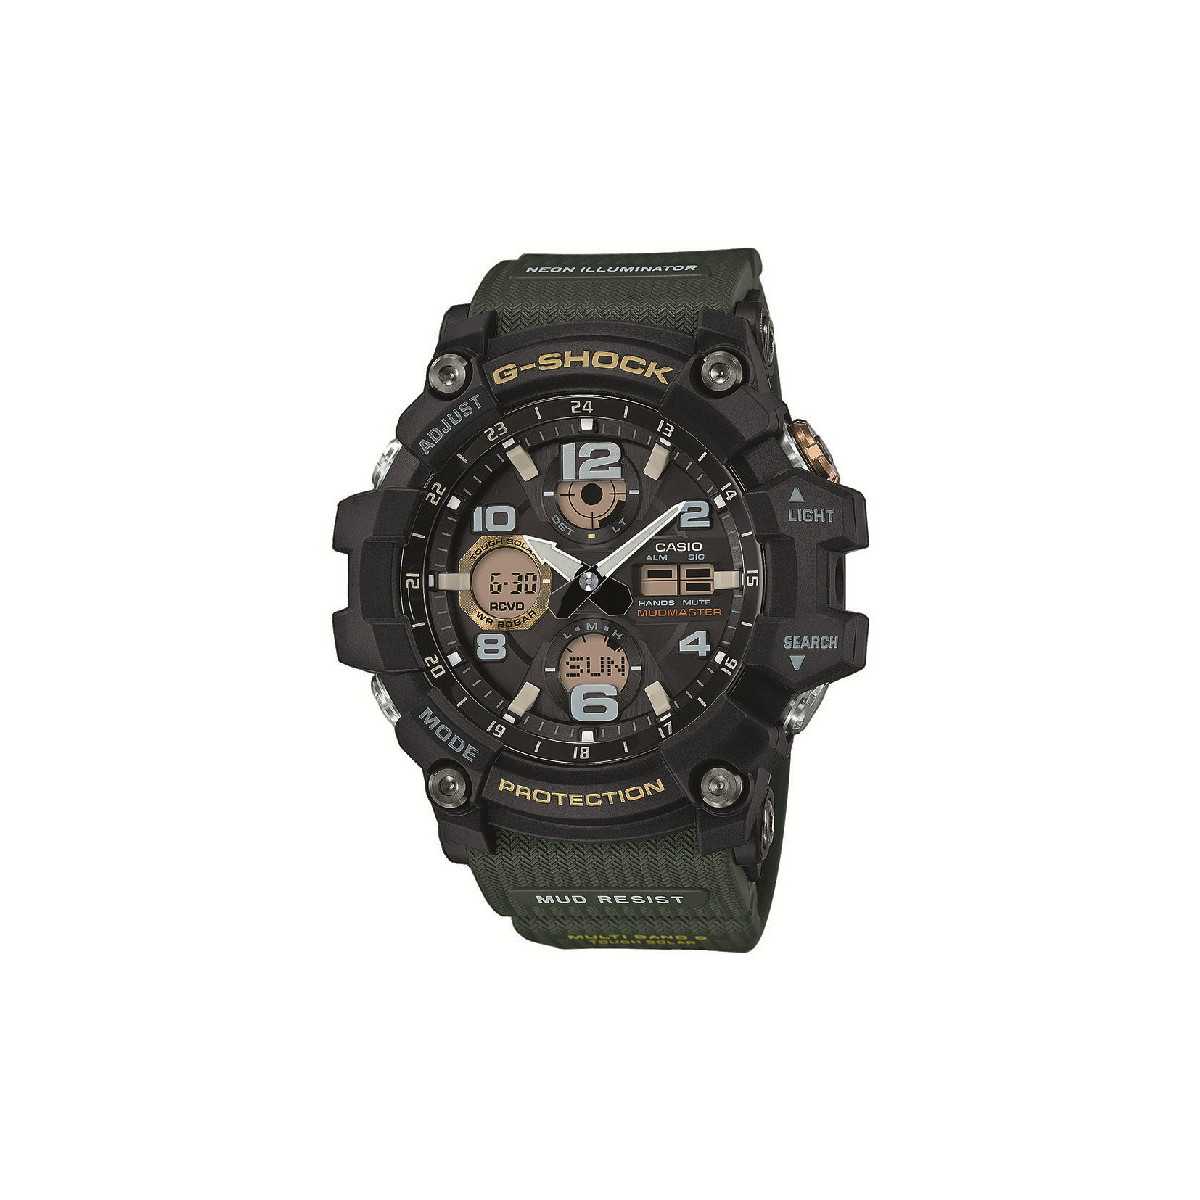 Reloj Casio G-Shock GWG-100-1A3ER